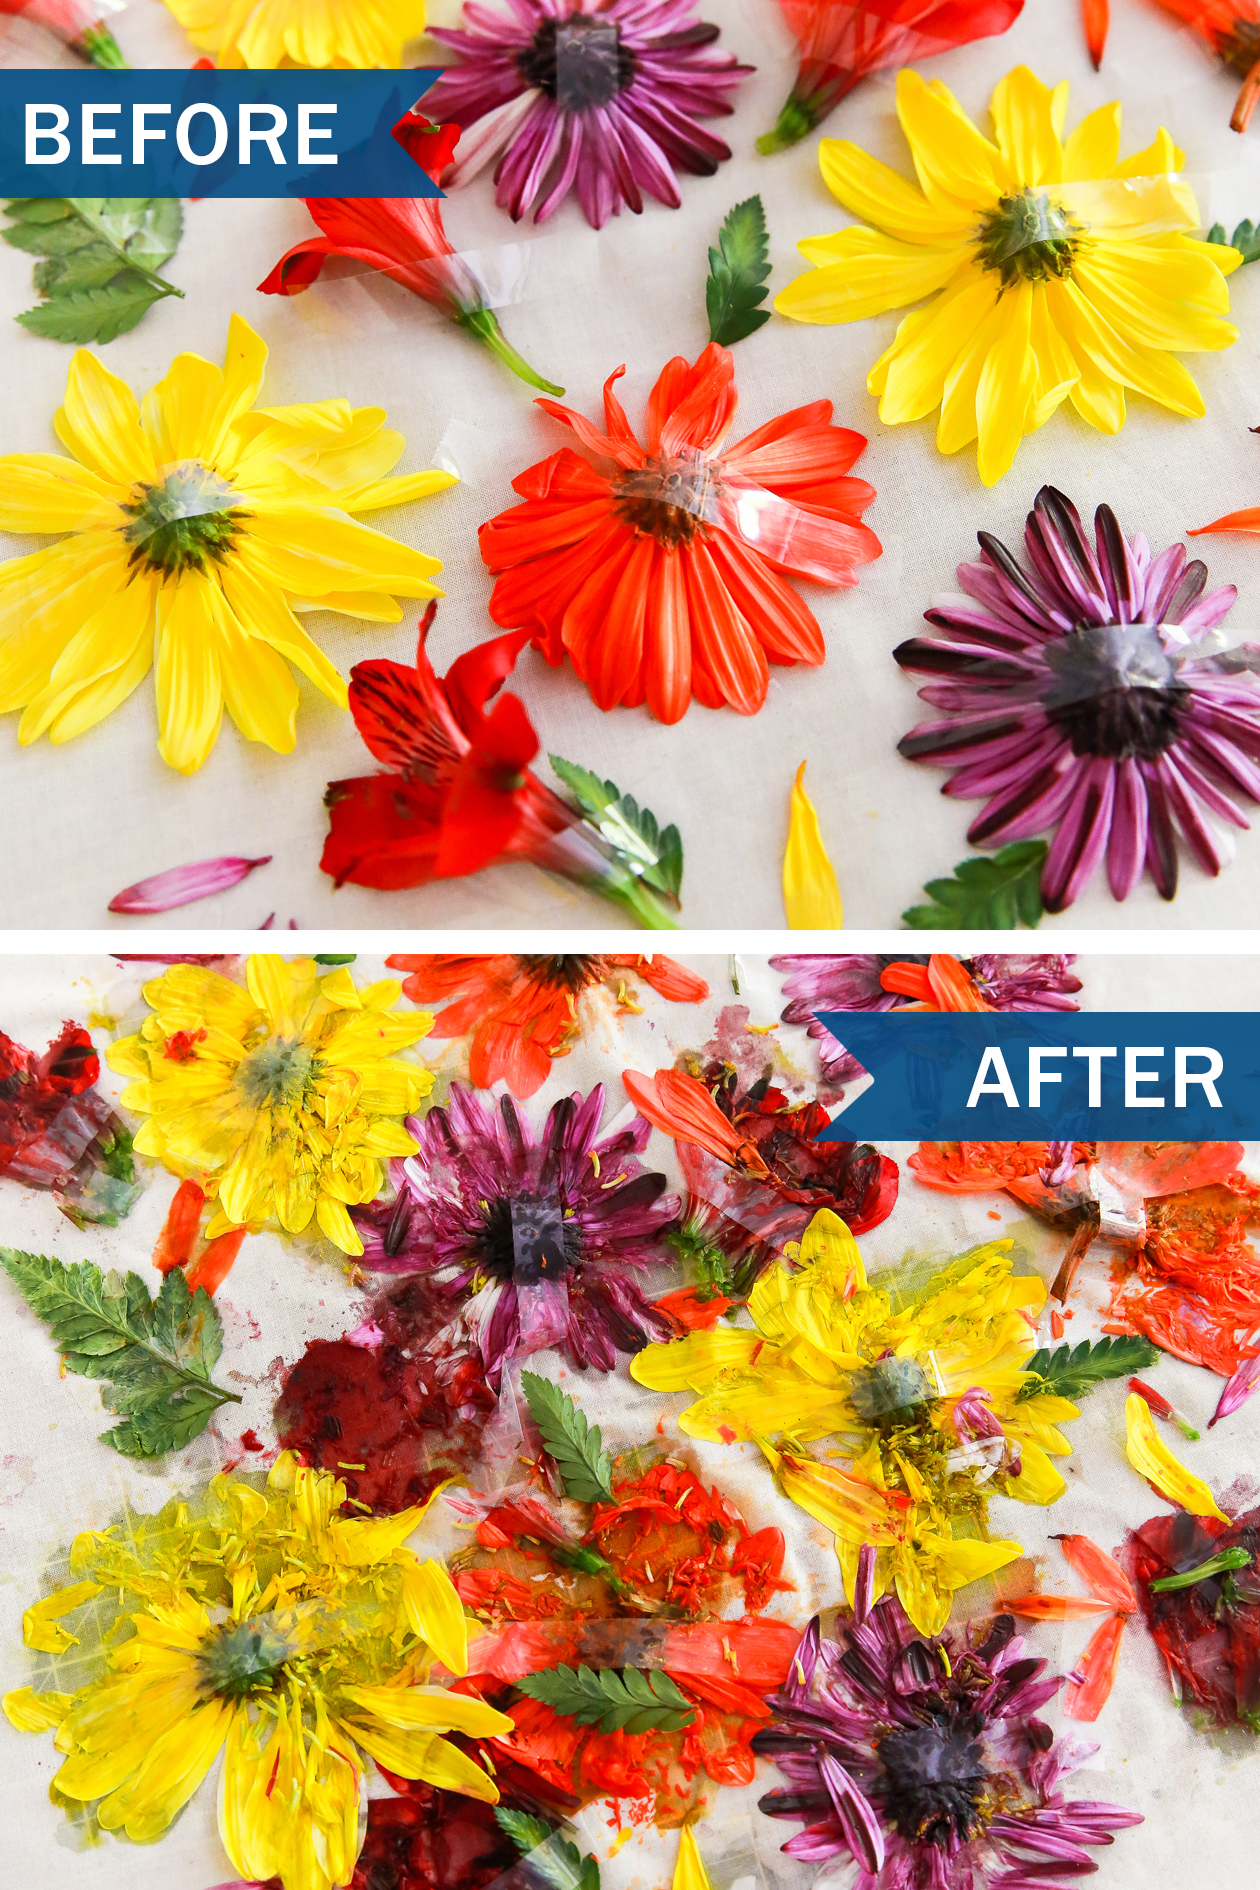 Créez cet art floral martelé bricolage pour votre maison en quelques étapes faciles!  Tout ce dont vous avez besoin est du tissu, des fleurs et un marteau pour commencer. 